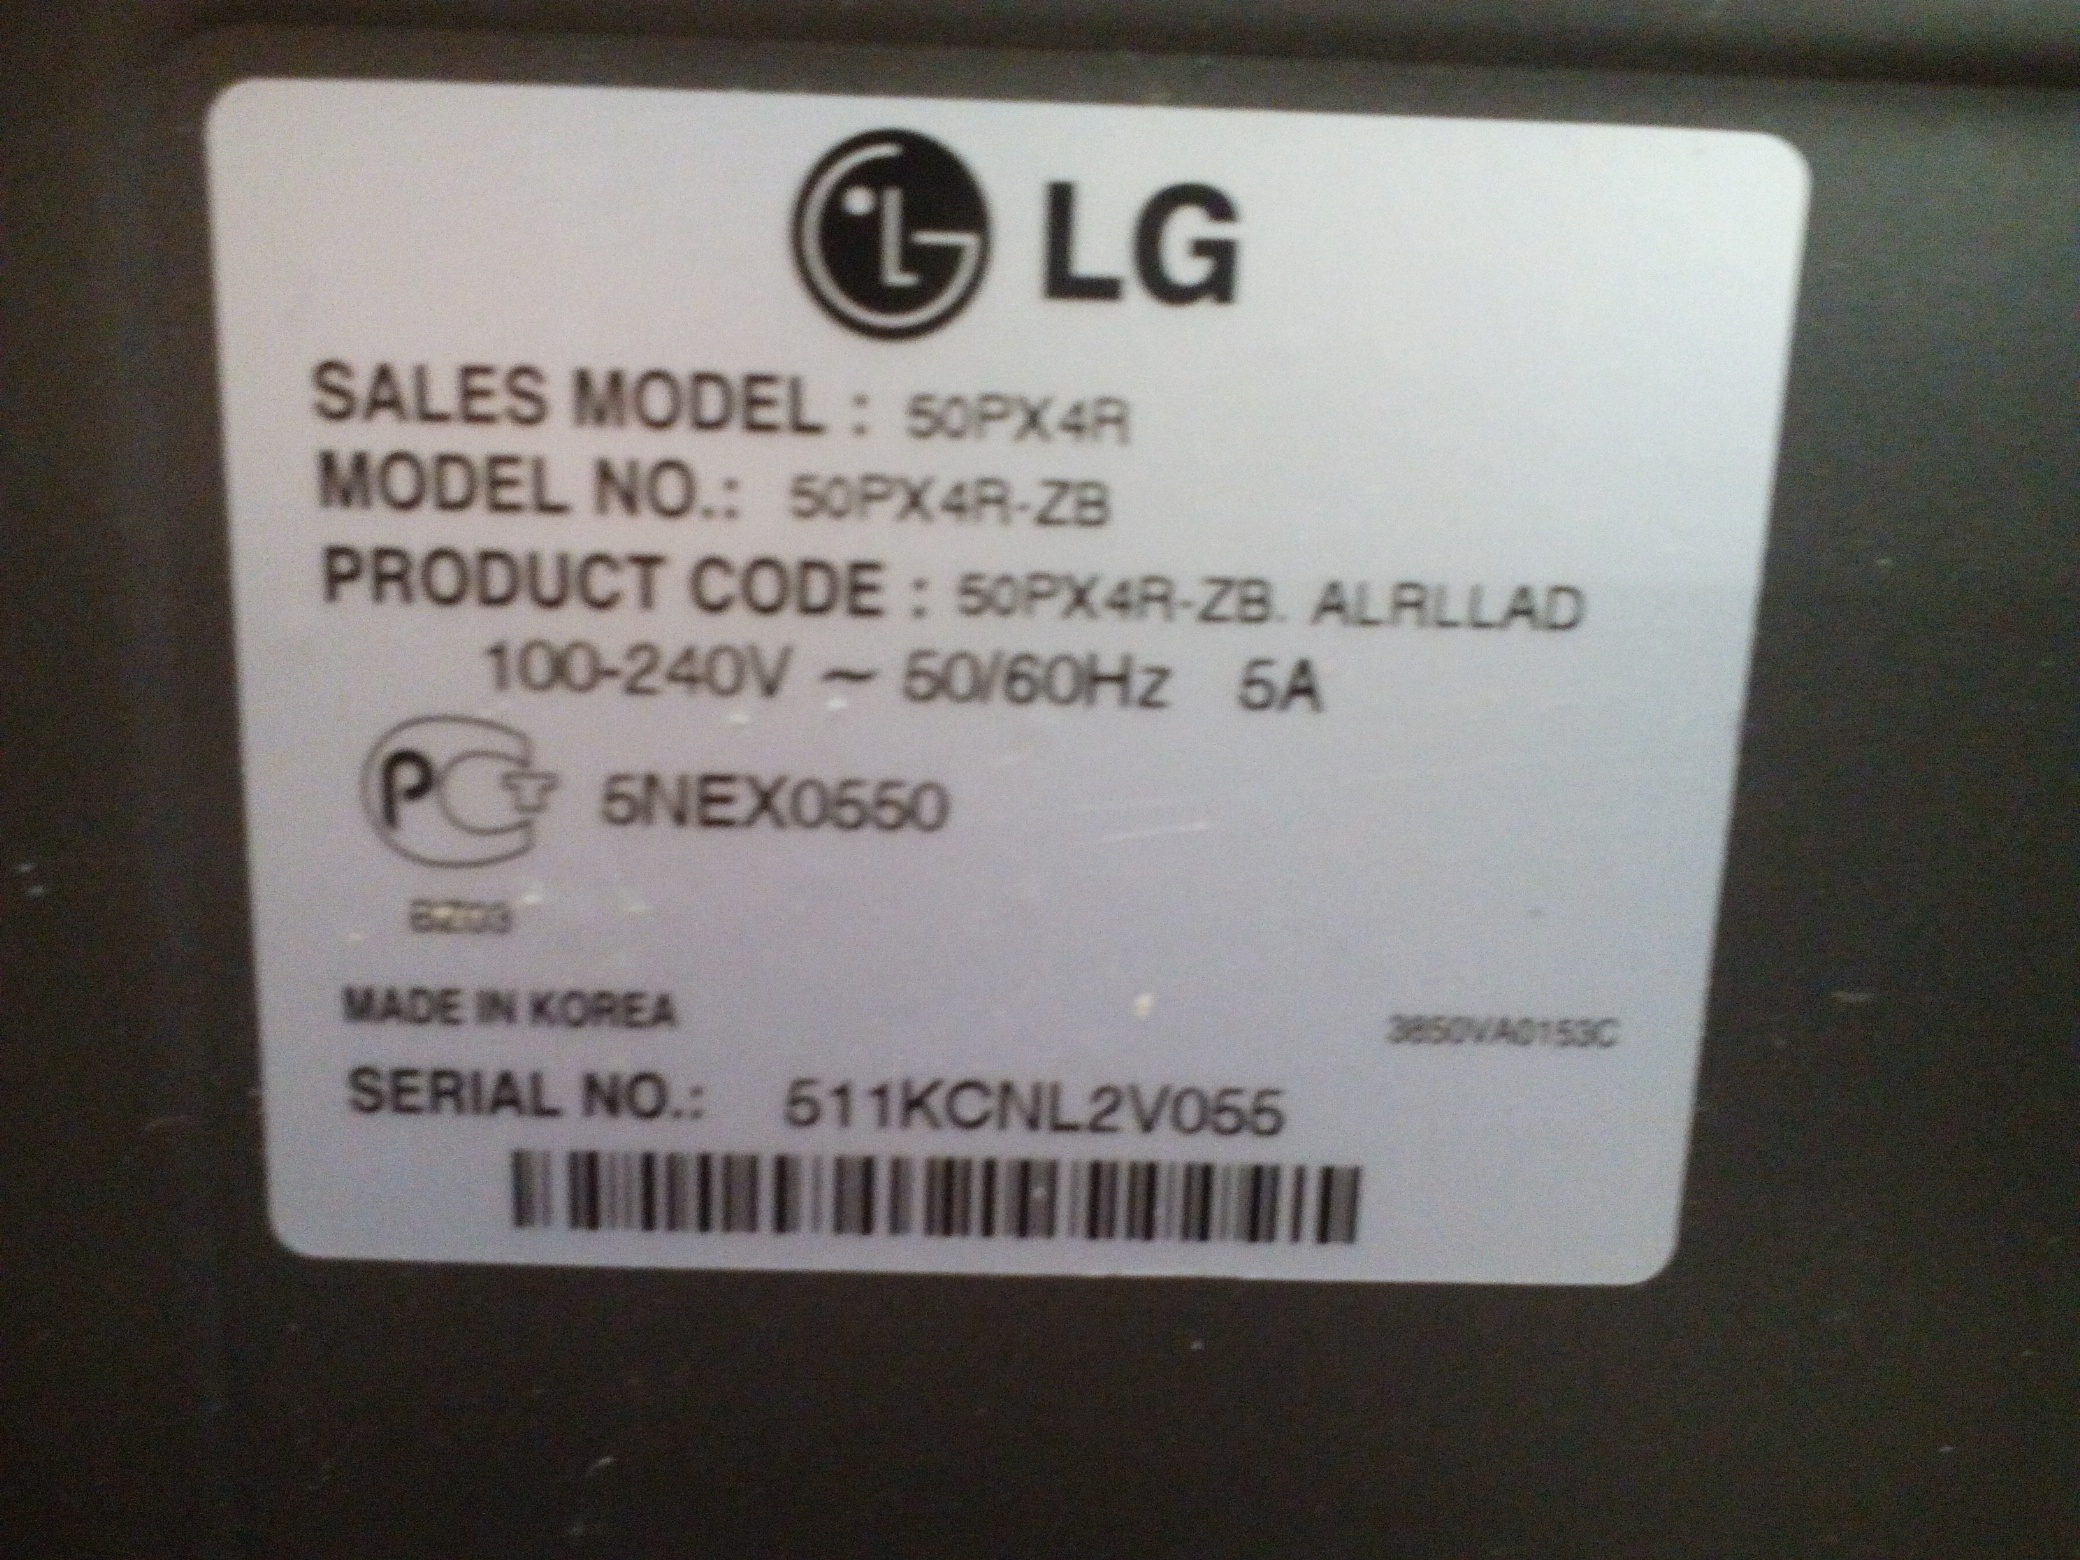 Плазменный телевизор LG 50PX4R